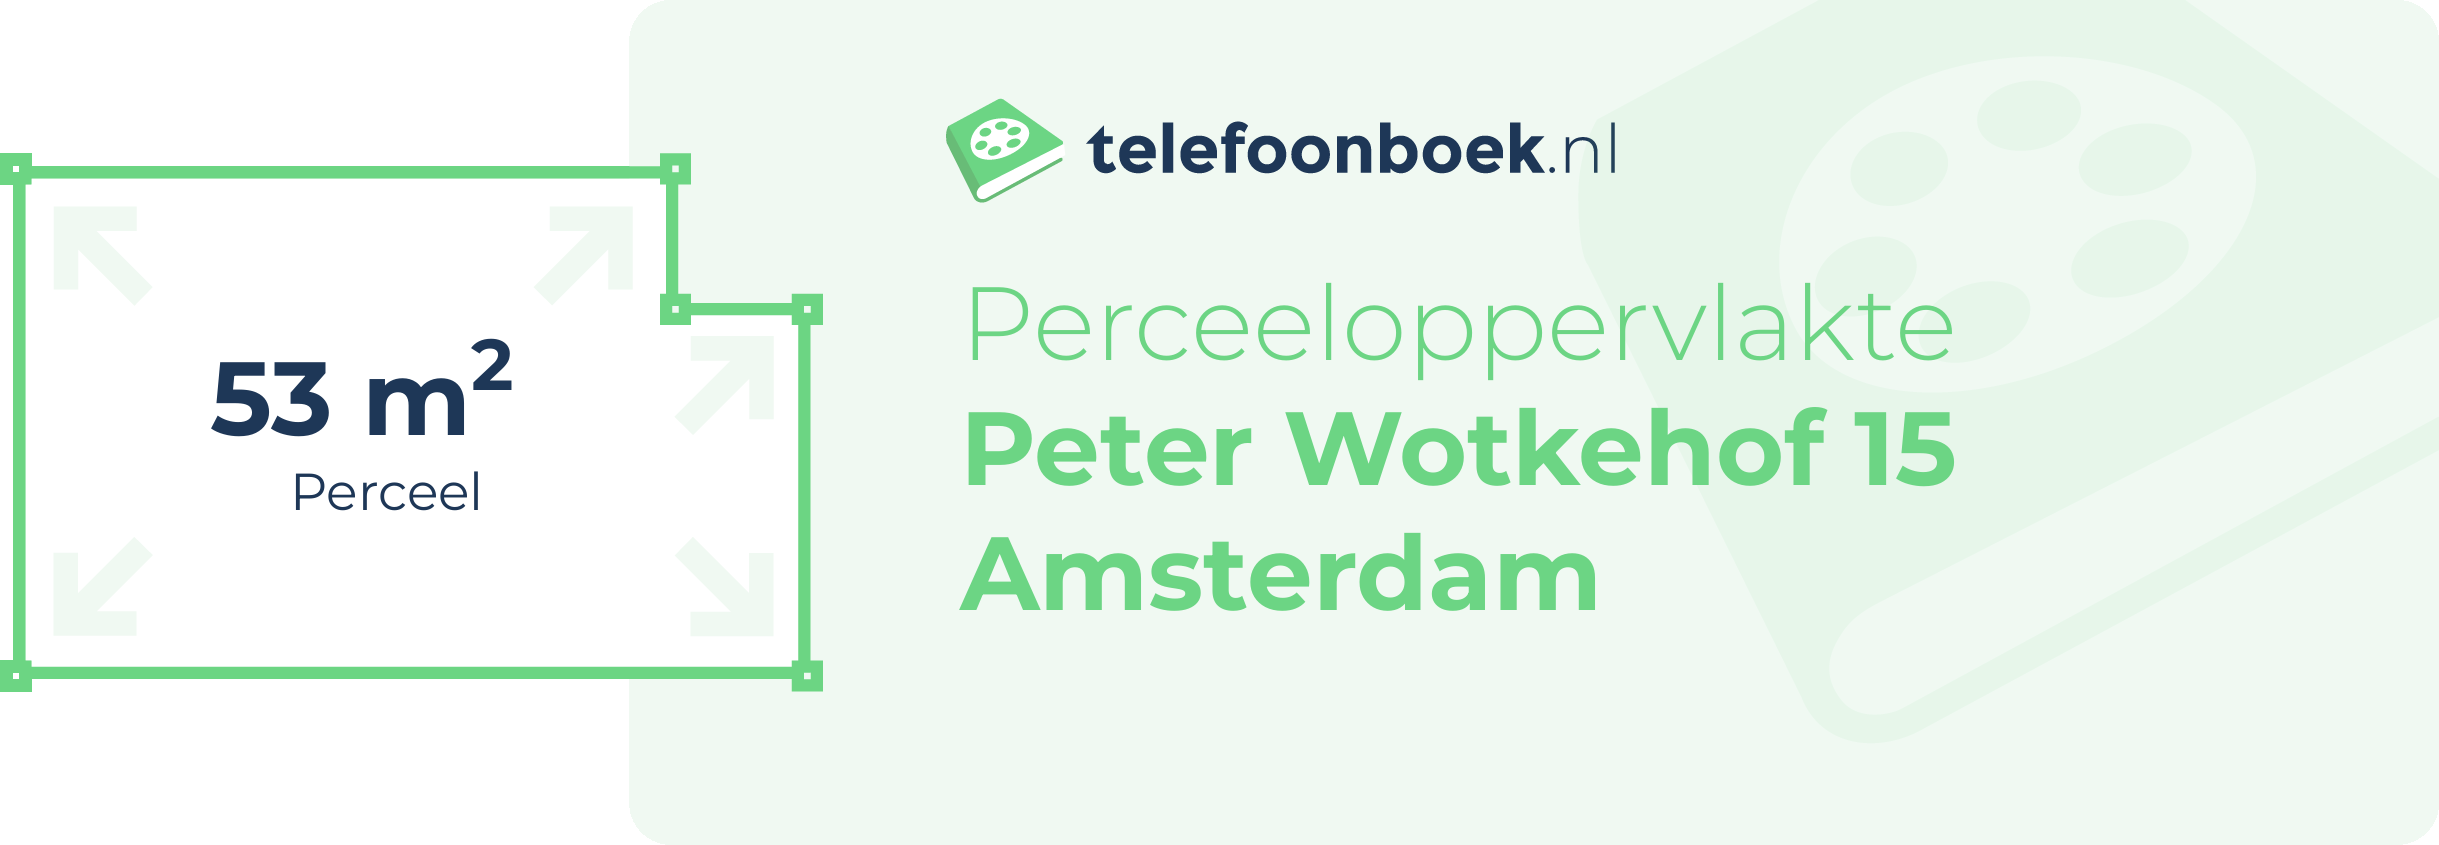 Perceeloppervlakte Peter Wotkehof 15 Amsterdam